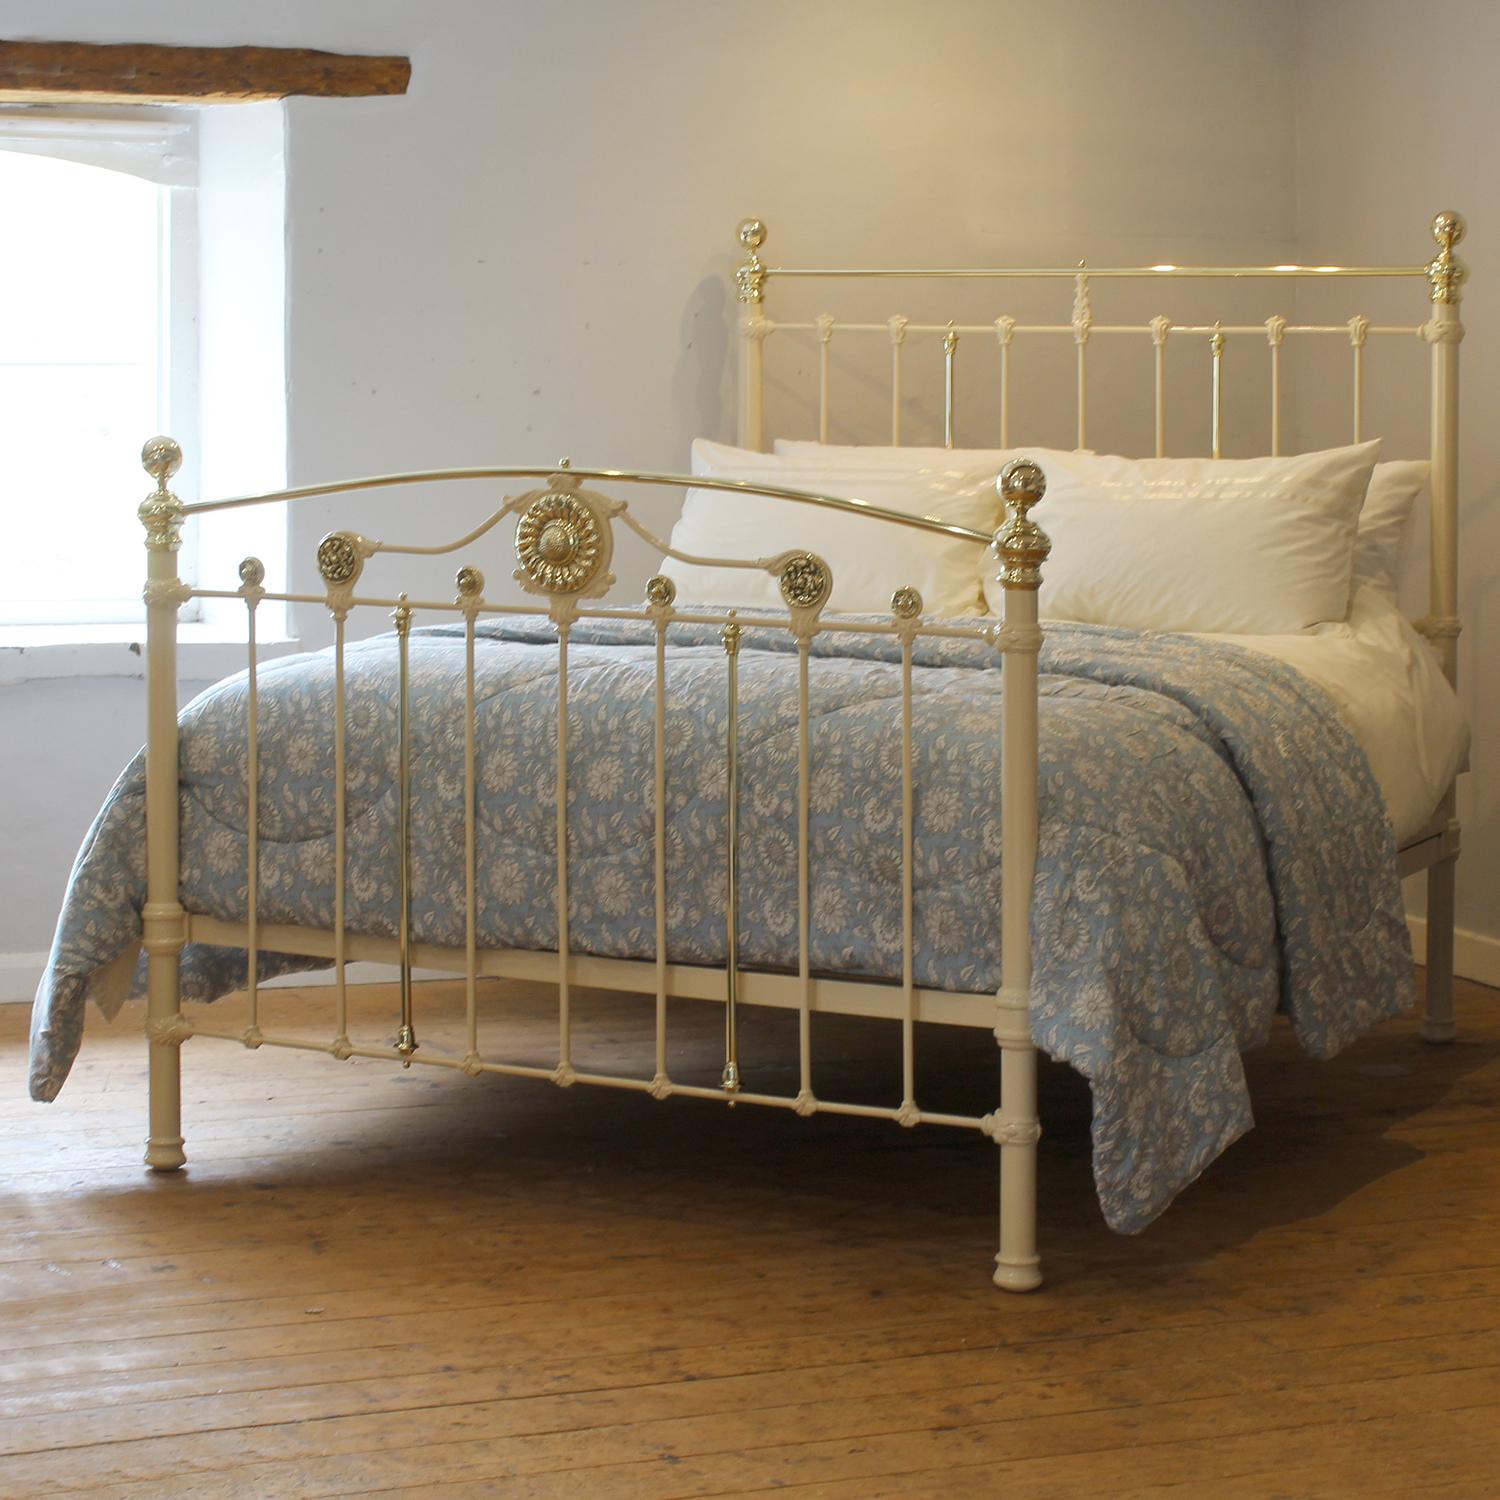 Eine hervorragende Gusseisen antiken Bett in Creme mit dekorativen Fußteil Anzeige floralen Rosetten einschließlich einer atemberaubenden zentralen rossette einer Sonnenblume fertig.

Dieses Bett kann mit einem UK-King-Size- oder